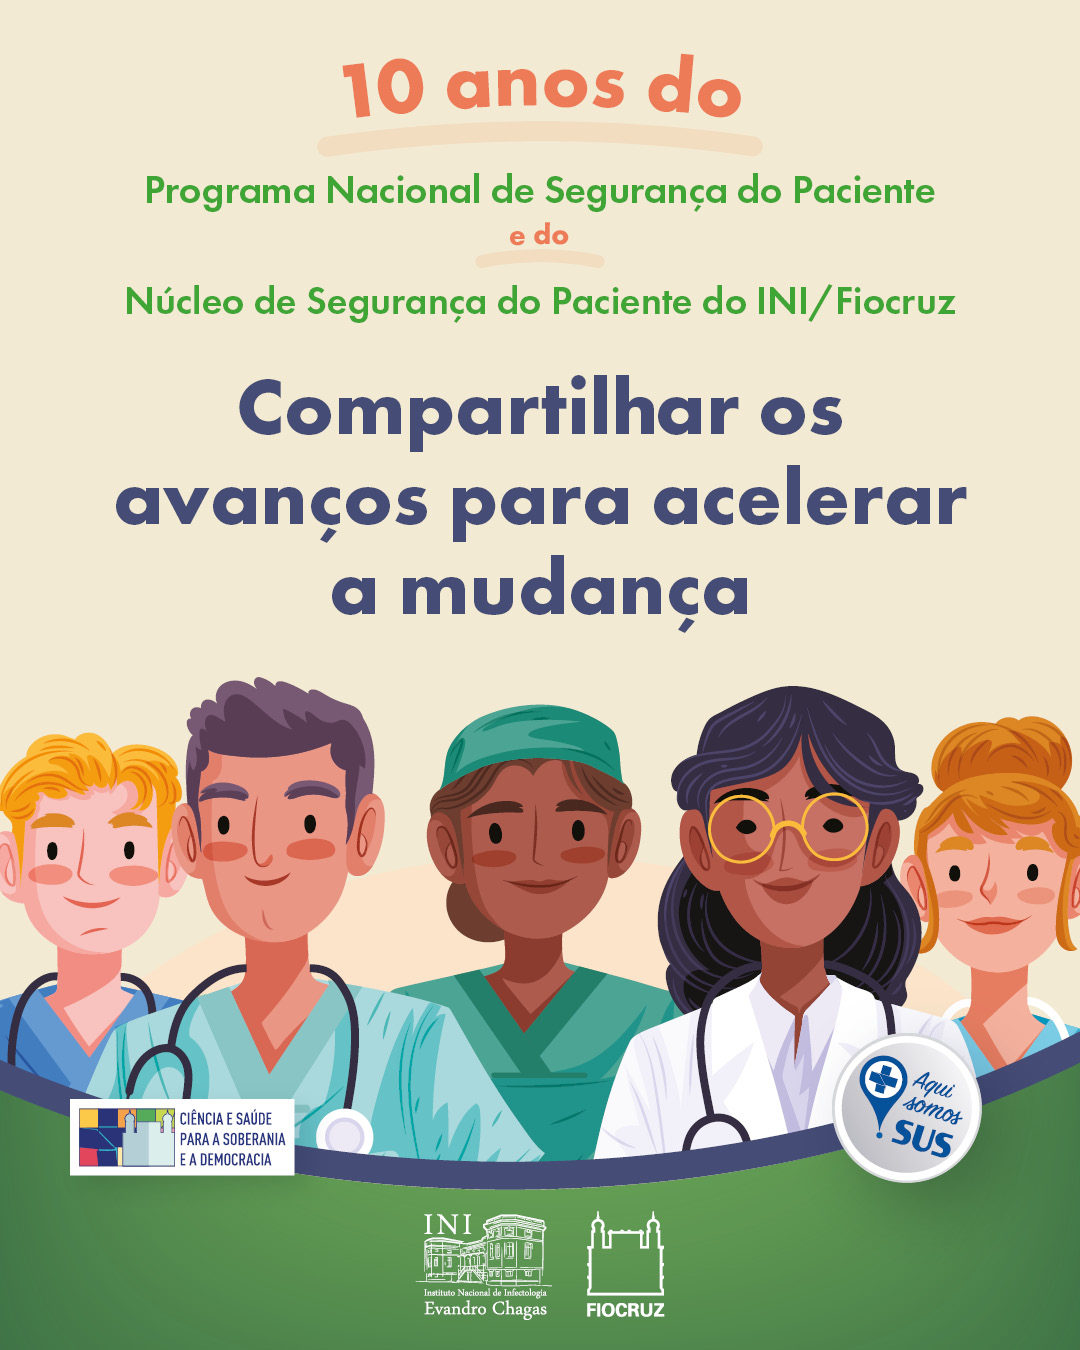 Card com ilustrações com vários tipos de profissionais de saúde, como médicos, médicas, enfermeiros, enfermeiras e auxiliares de enfermagem.